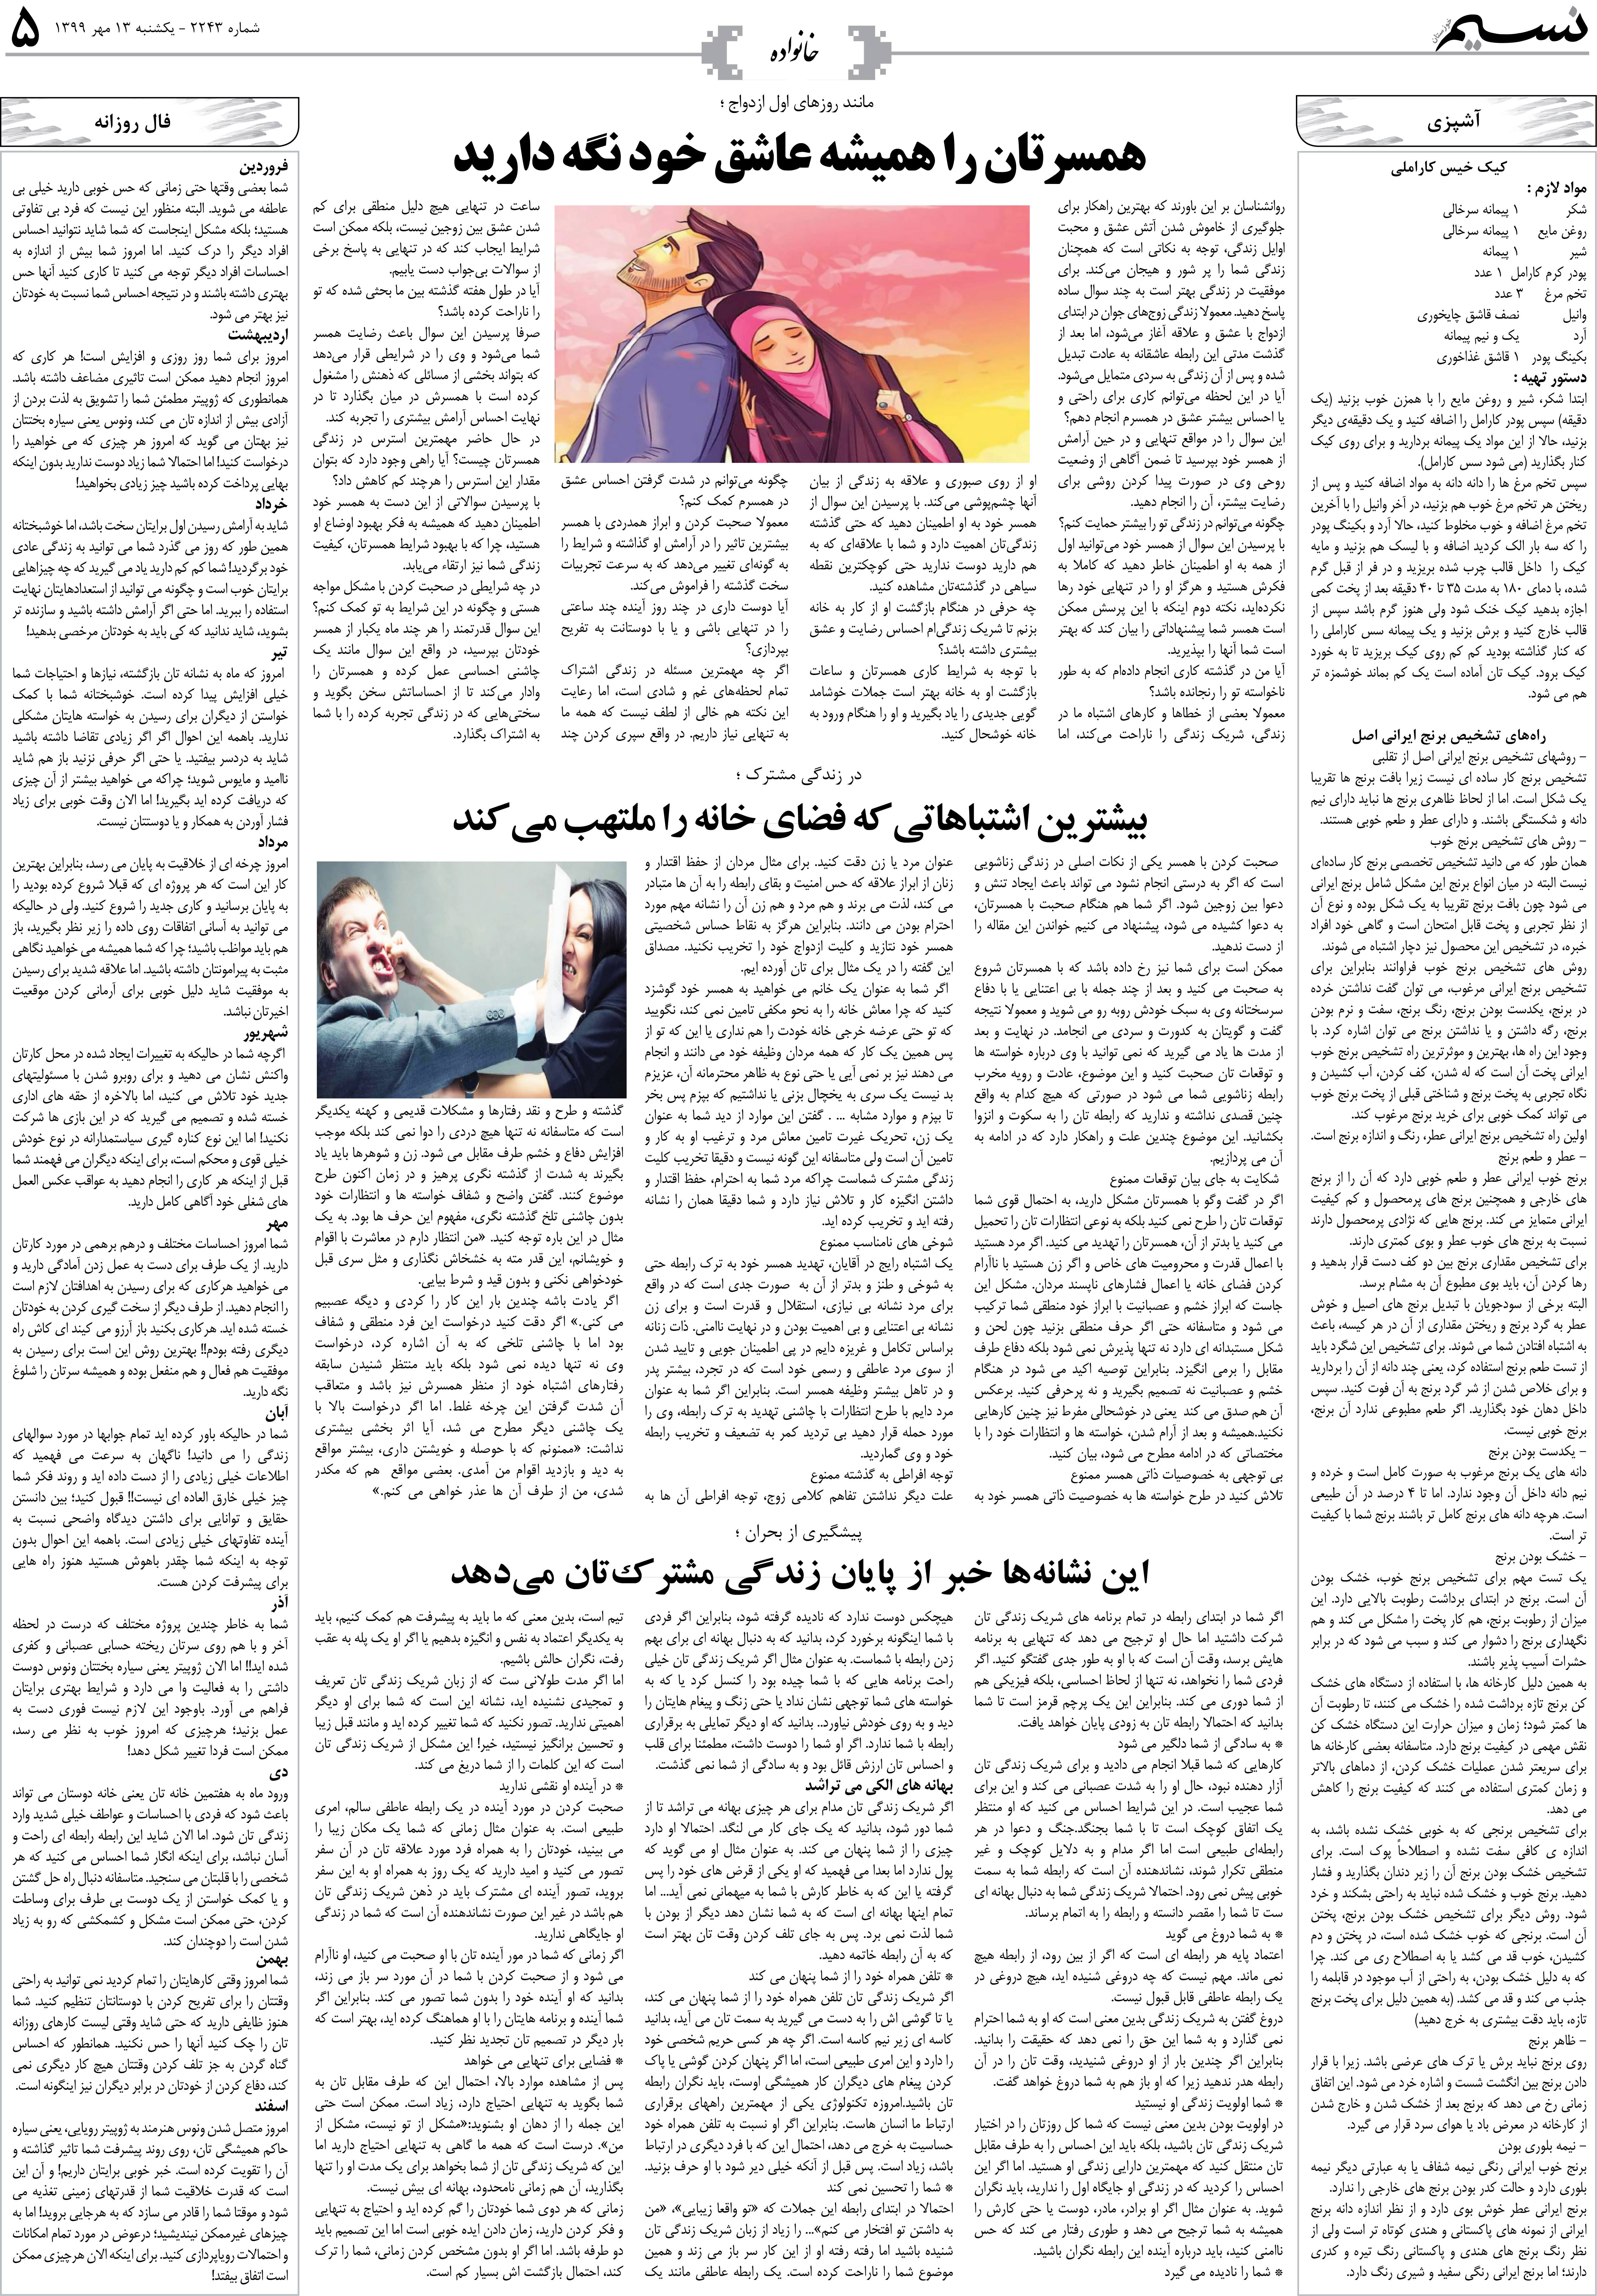 صفحه خانواده روزنامه نسیم شماره 2243